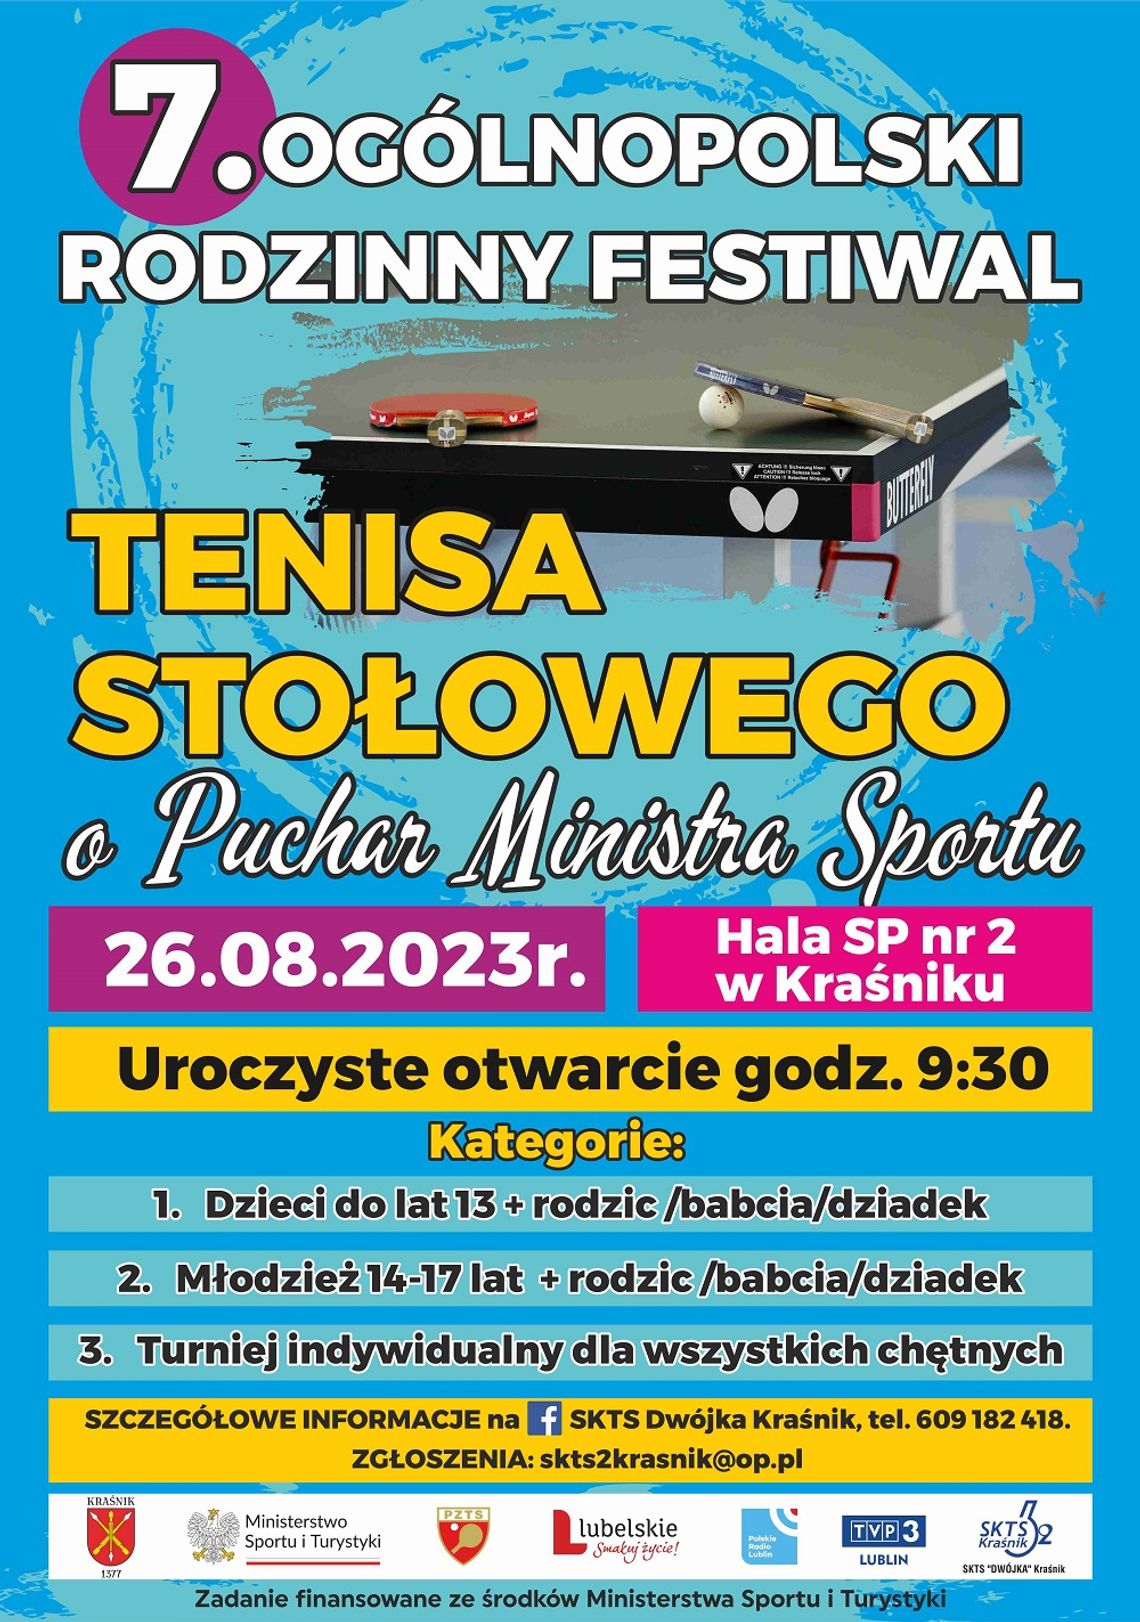 7. Ogólnopolski Rodzinny Festiwal Tenisa Stołowego o Puchar Ministra Sportu - Kraśnik 26.08.2023